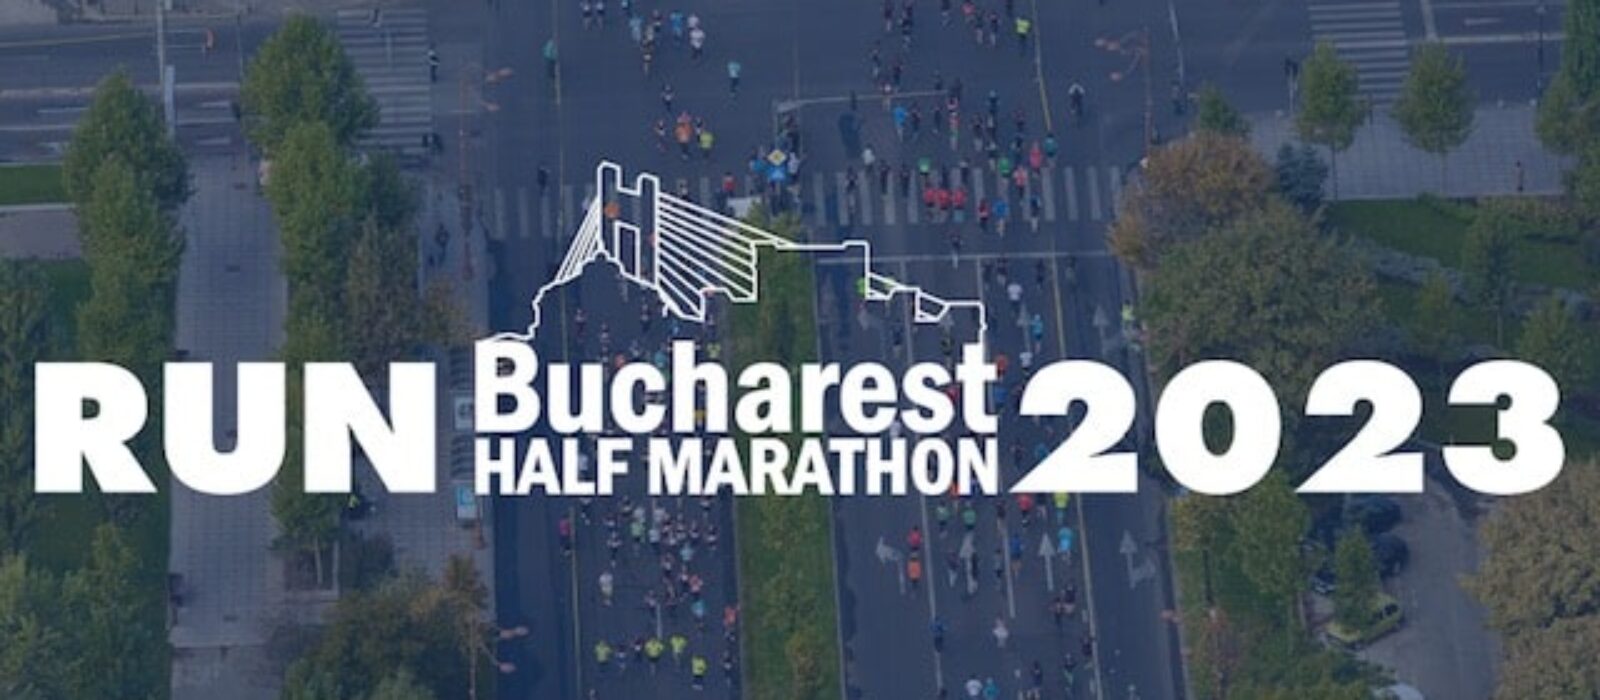 Bucharest Half Marathon